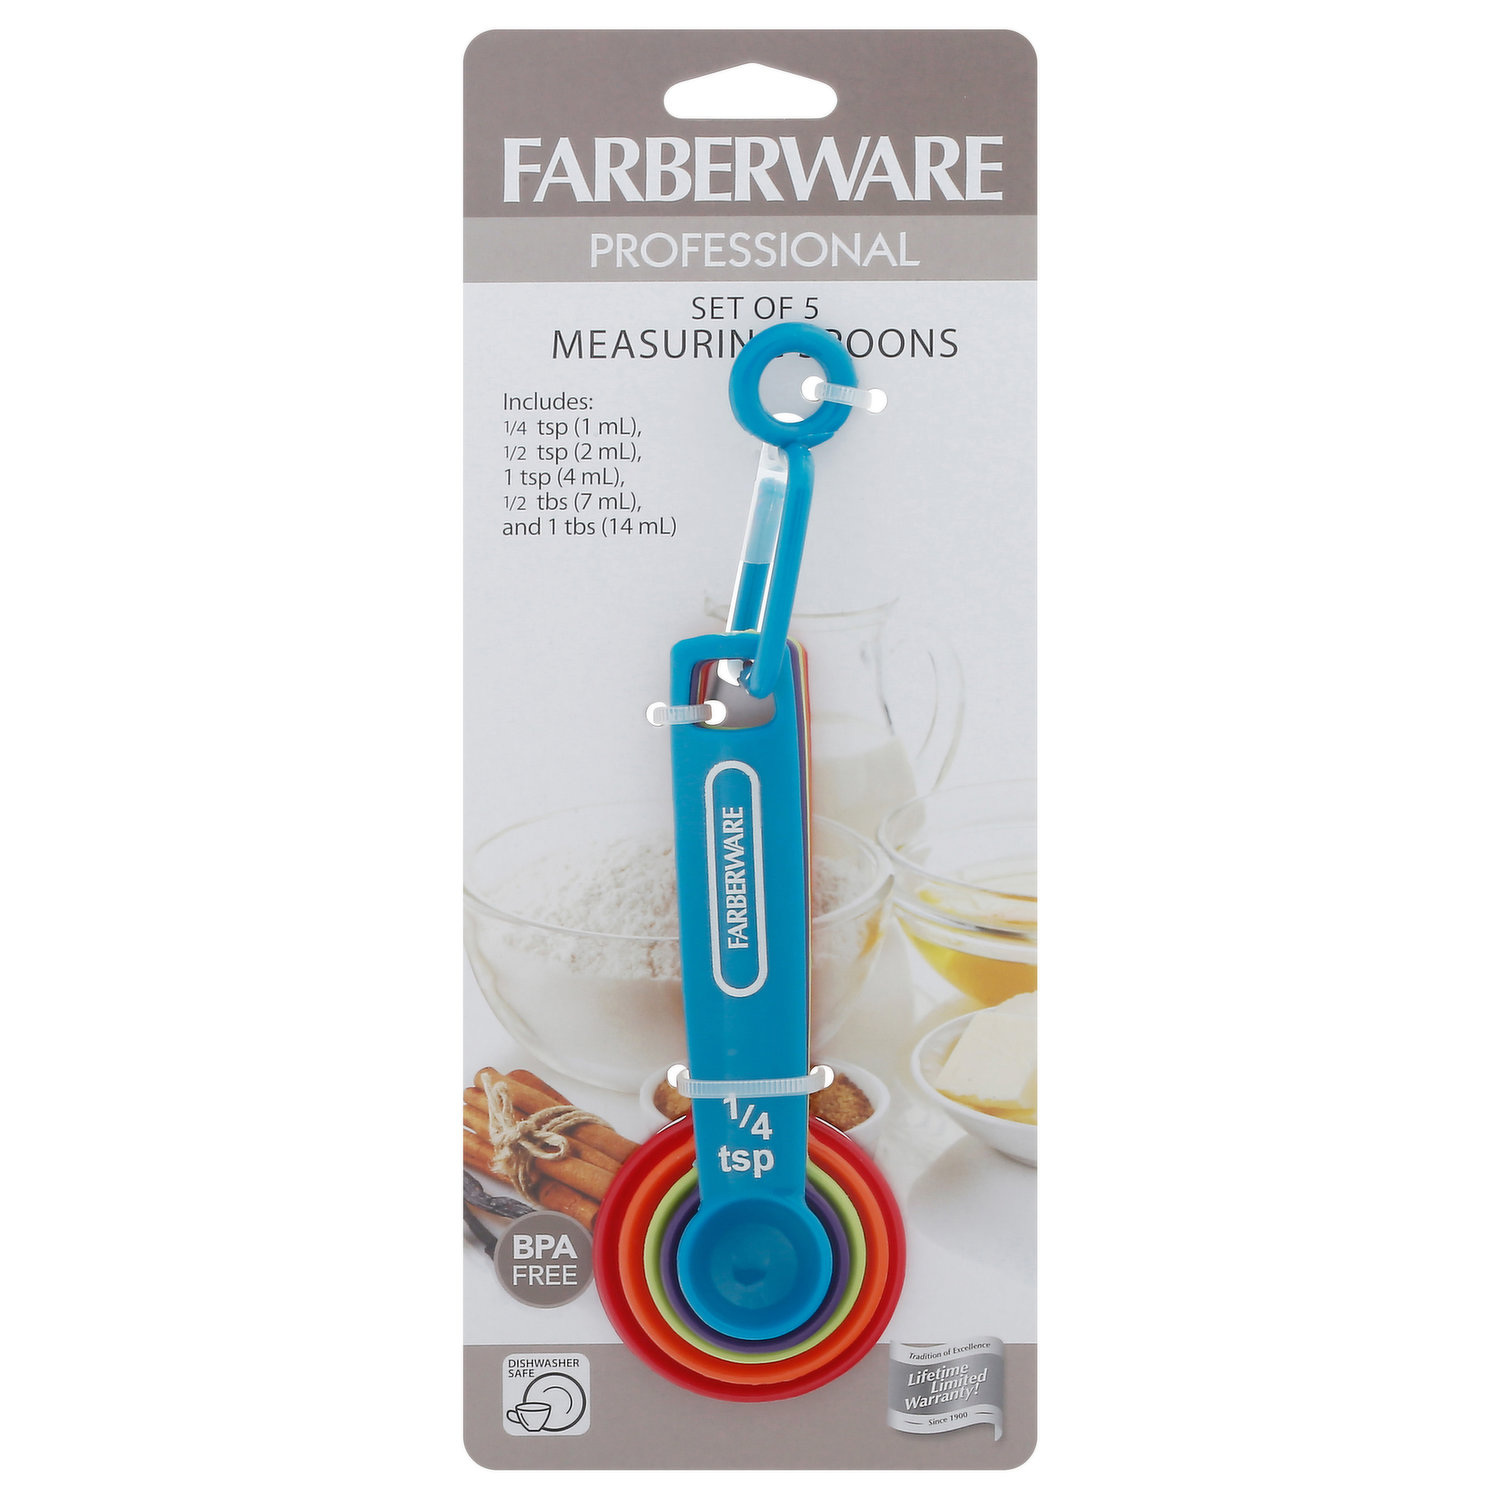 Farberware Professional Plastic Measuring Spoons, Set of 5, Colors may vary  & Farberware Professional Plastic Measuring Cups with Coffee Spoon, Set of